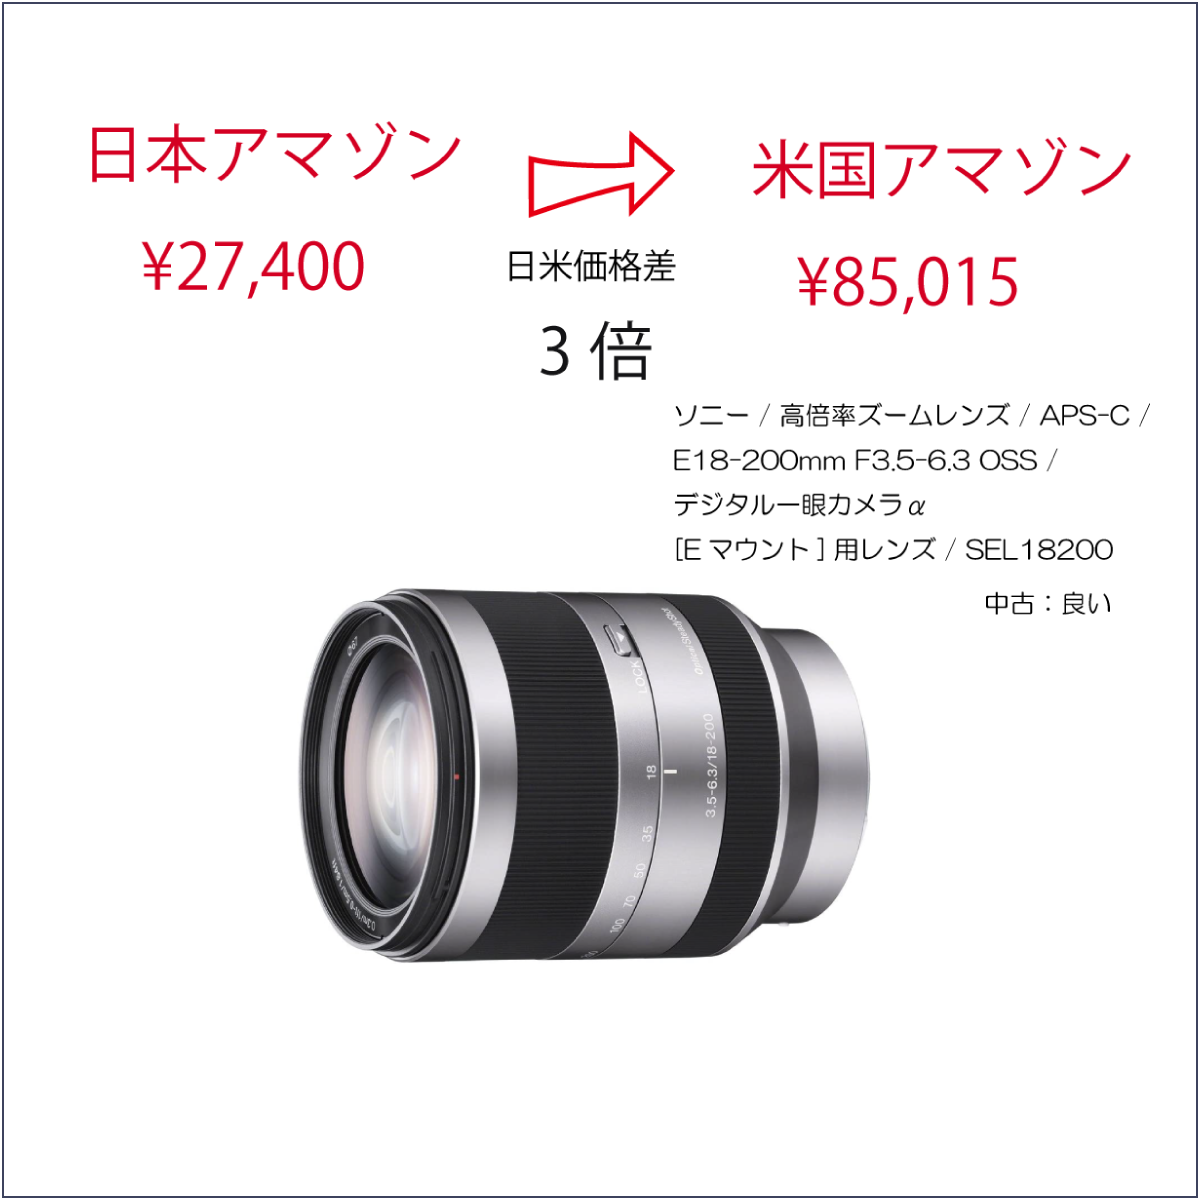 ソニー / 高倍率ズームレンズ / APS-C / E18-200mm F3.5-6.3 OSS / デジタル一眼カメラα[Eマウント]用レンズ / SEL18200(中古：良い)